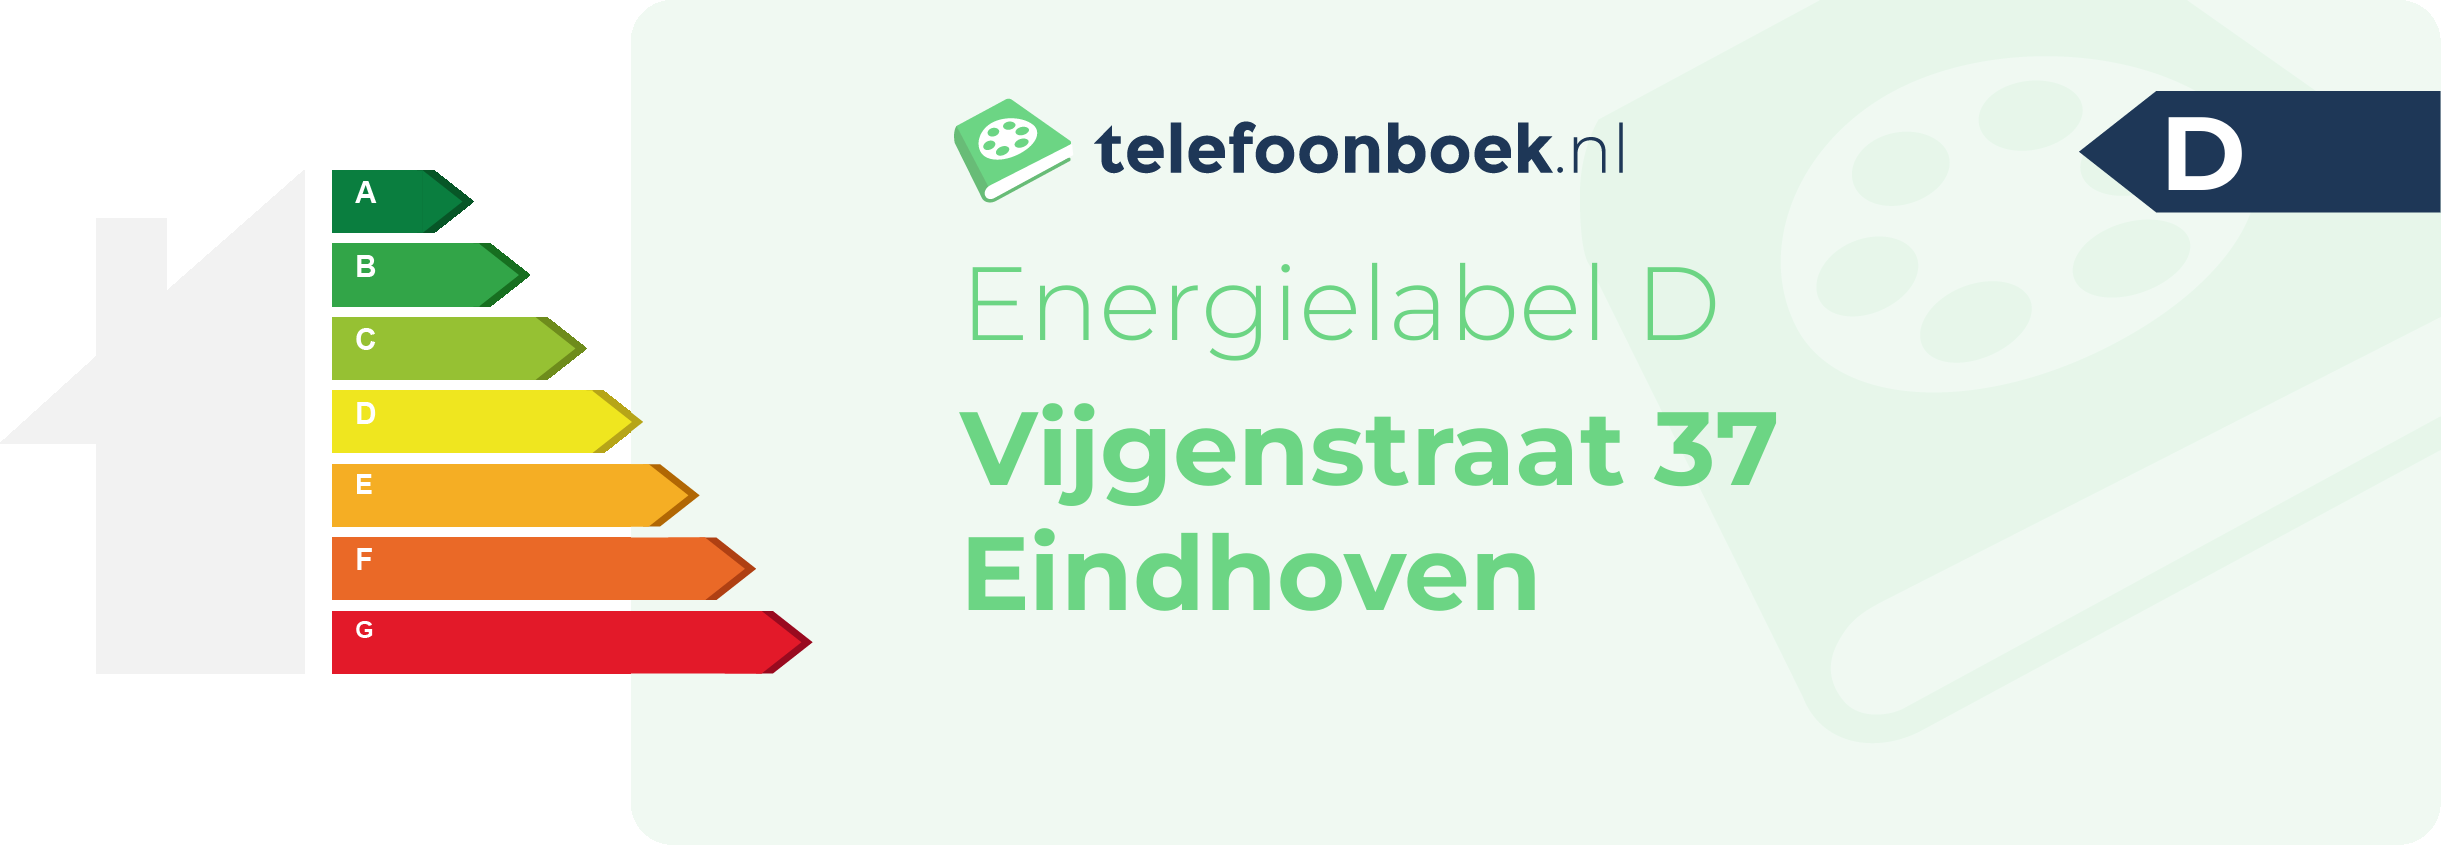 Energielabel Vijgenstraat 37 Eindhoven